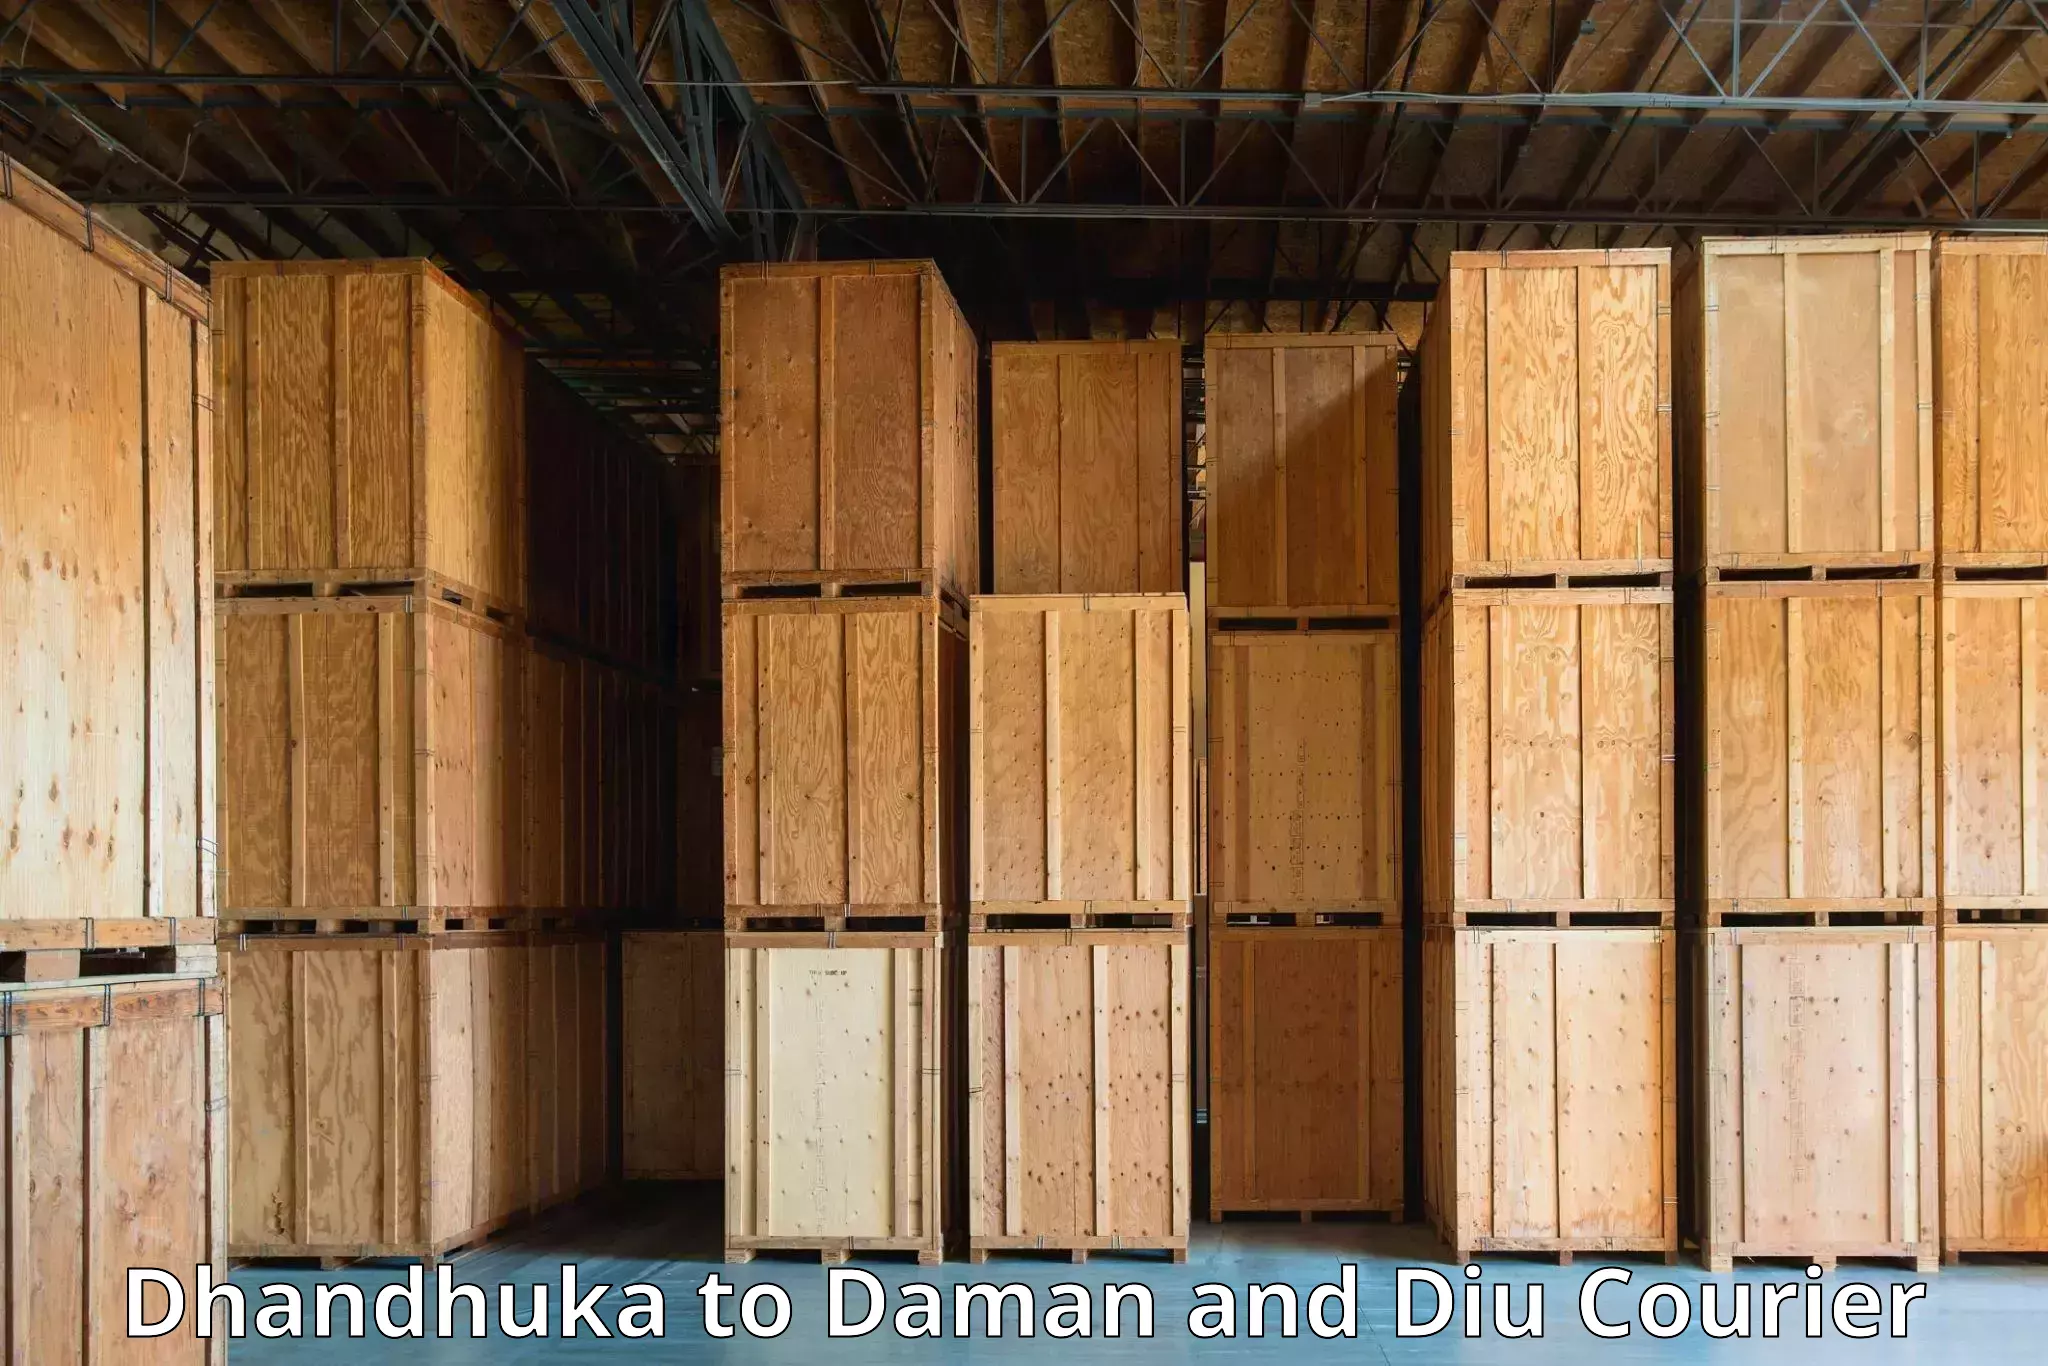 Nationwide shipping capabilities Dhandhuka to Diu